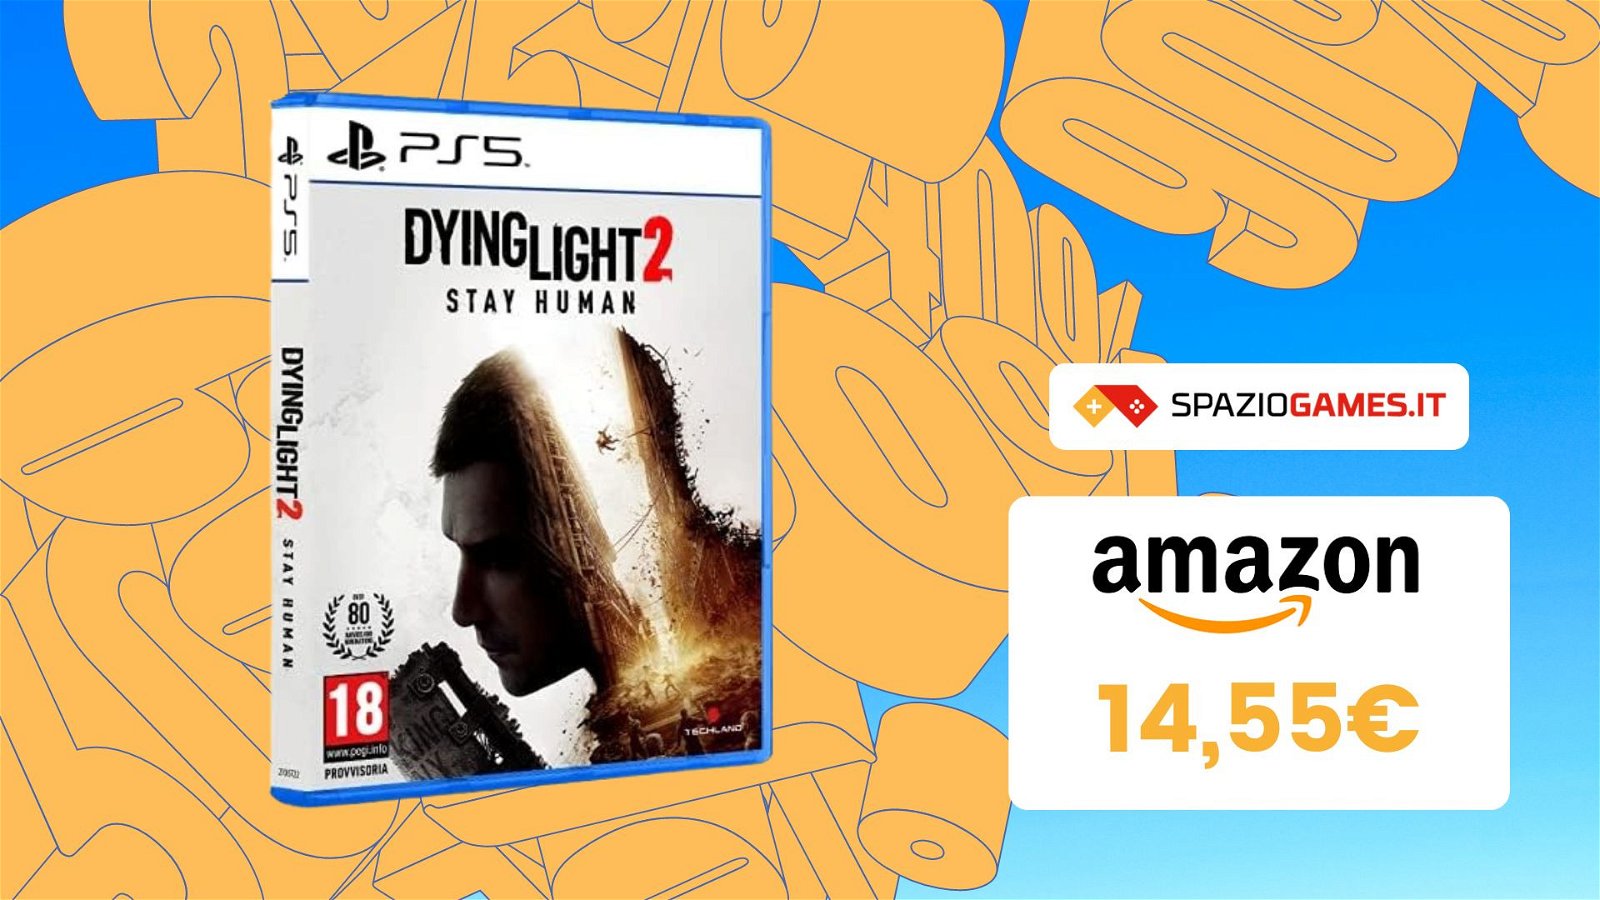 Dying Light 2 per PS5 a un prezzo IMPERDIBILE! MENO di 15€!